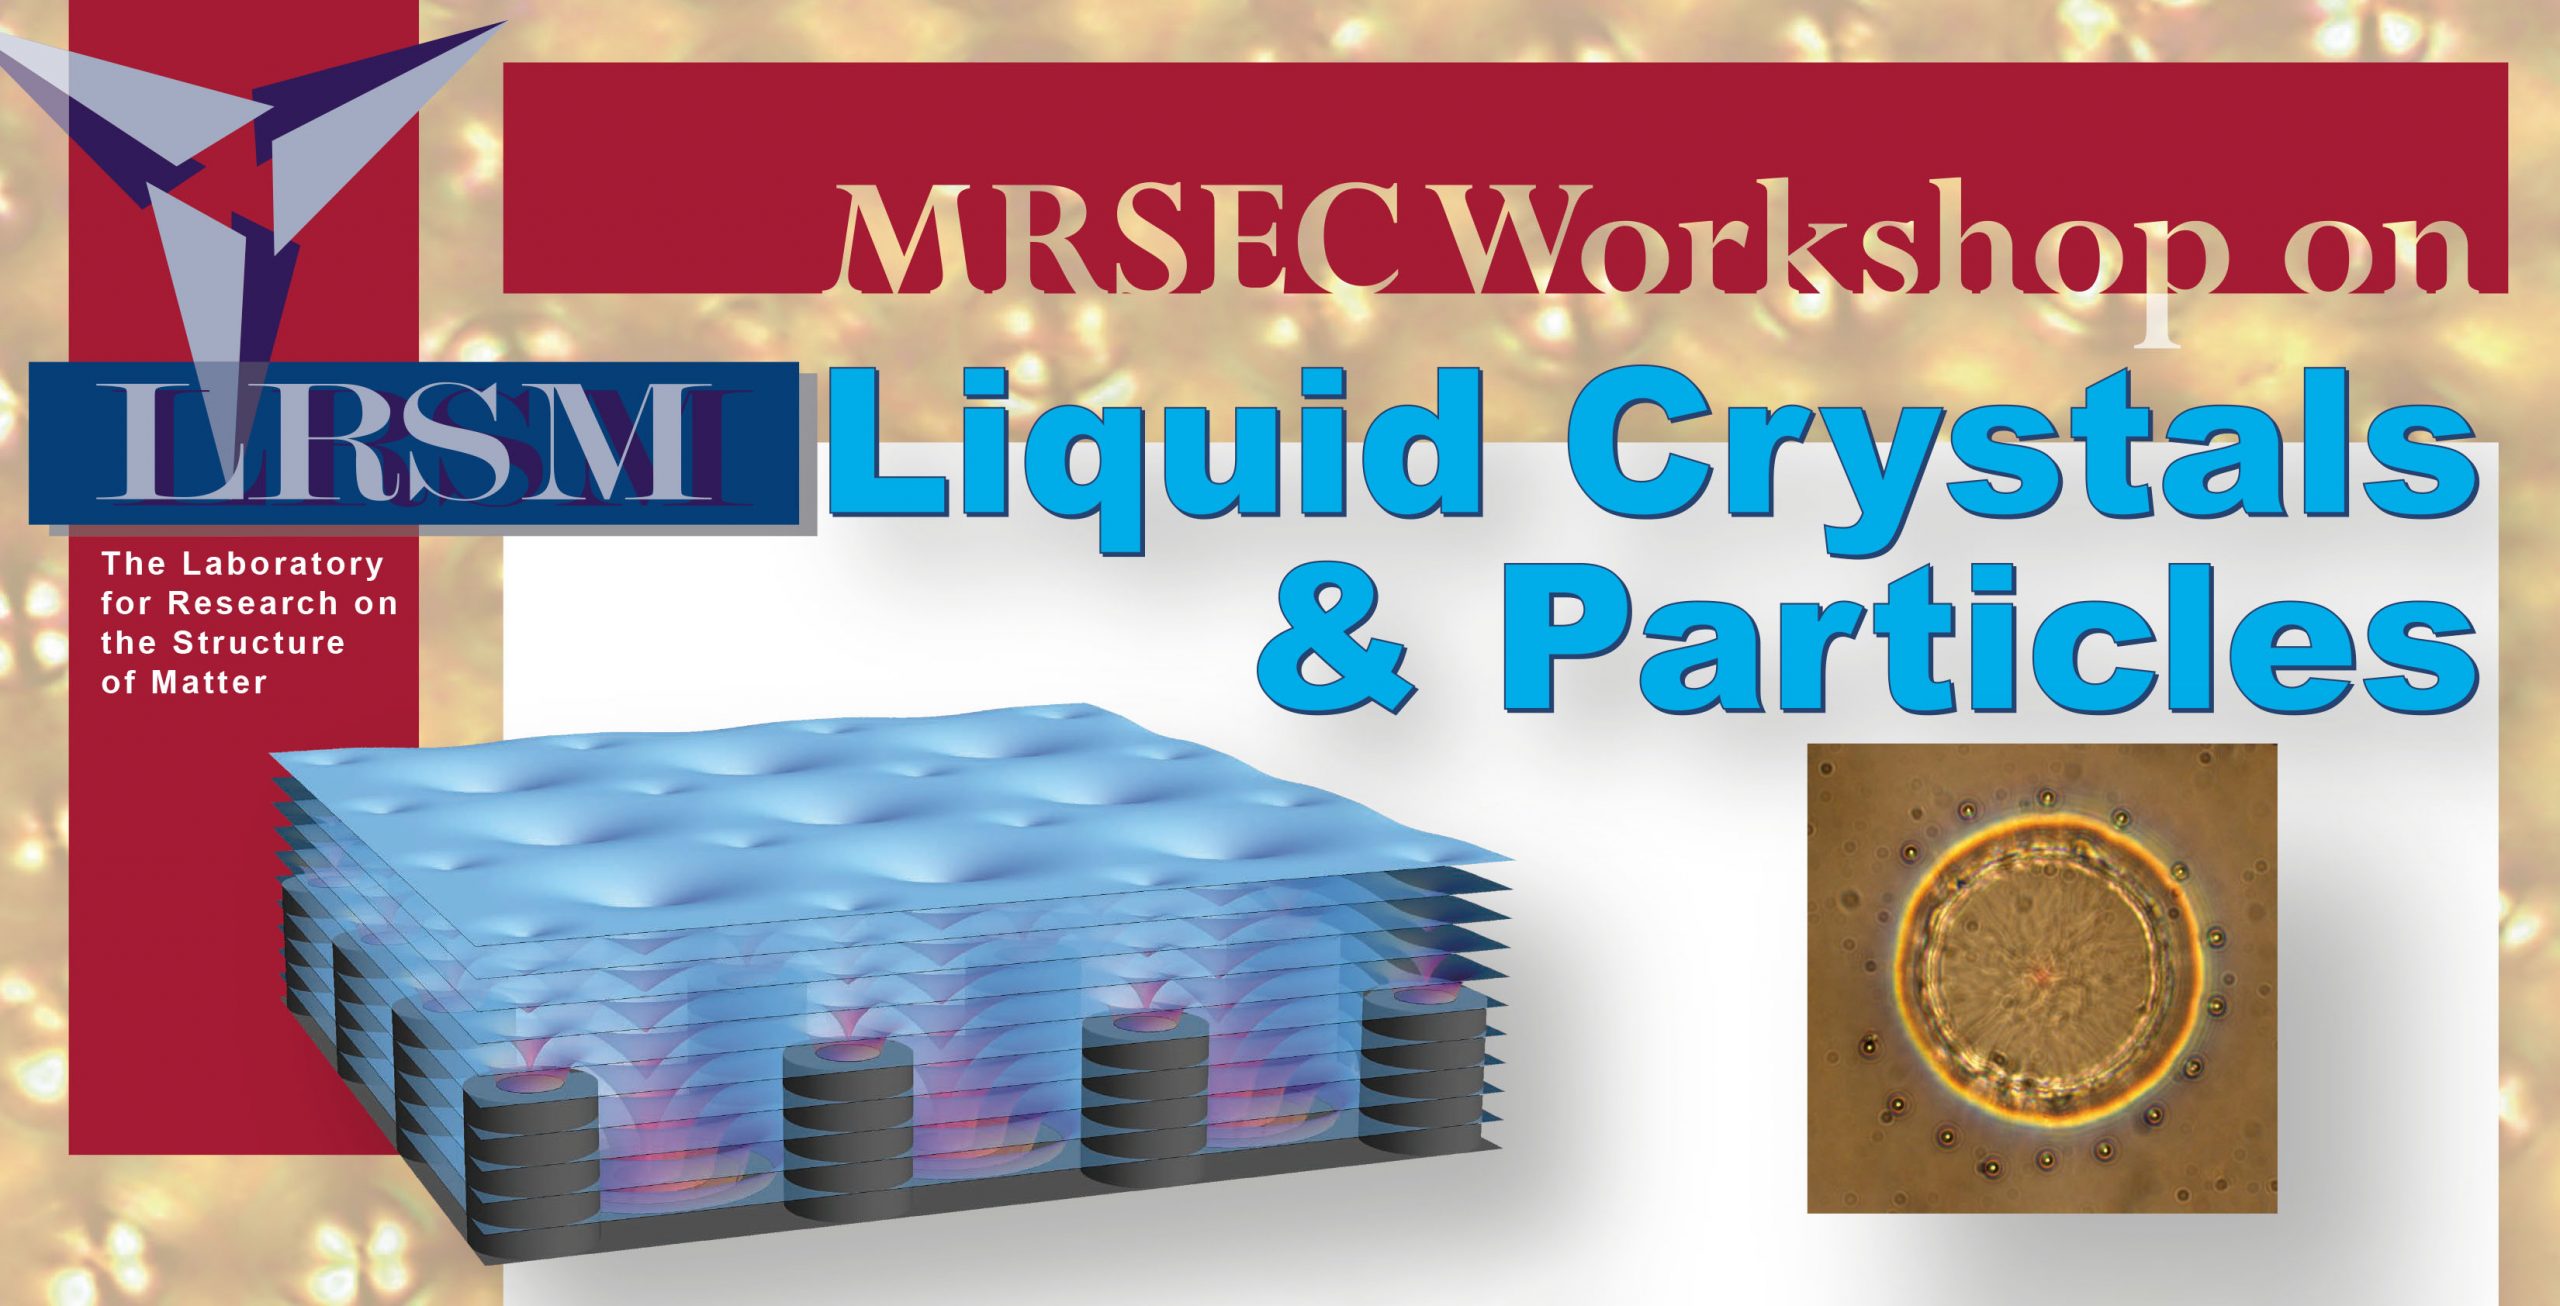 MRSEC Workshop on Liquid Crystals and Particles